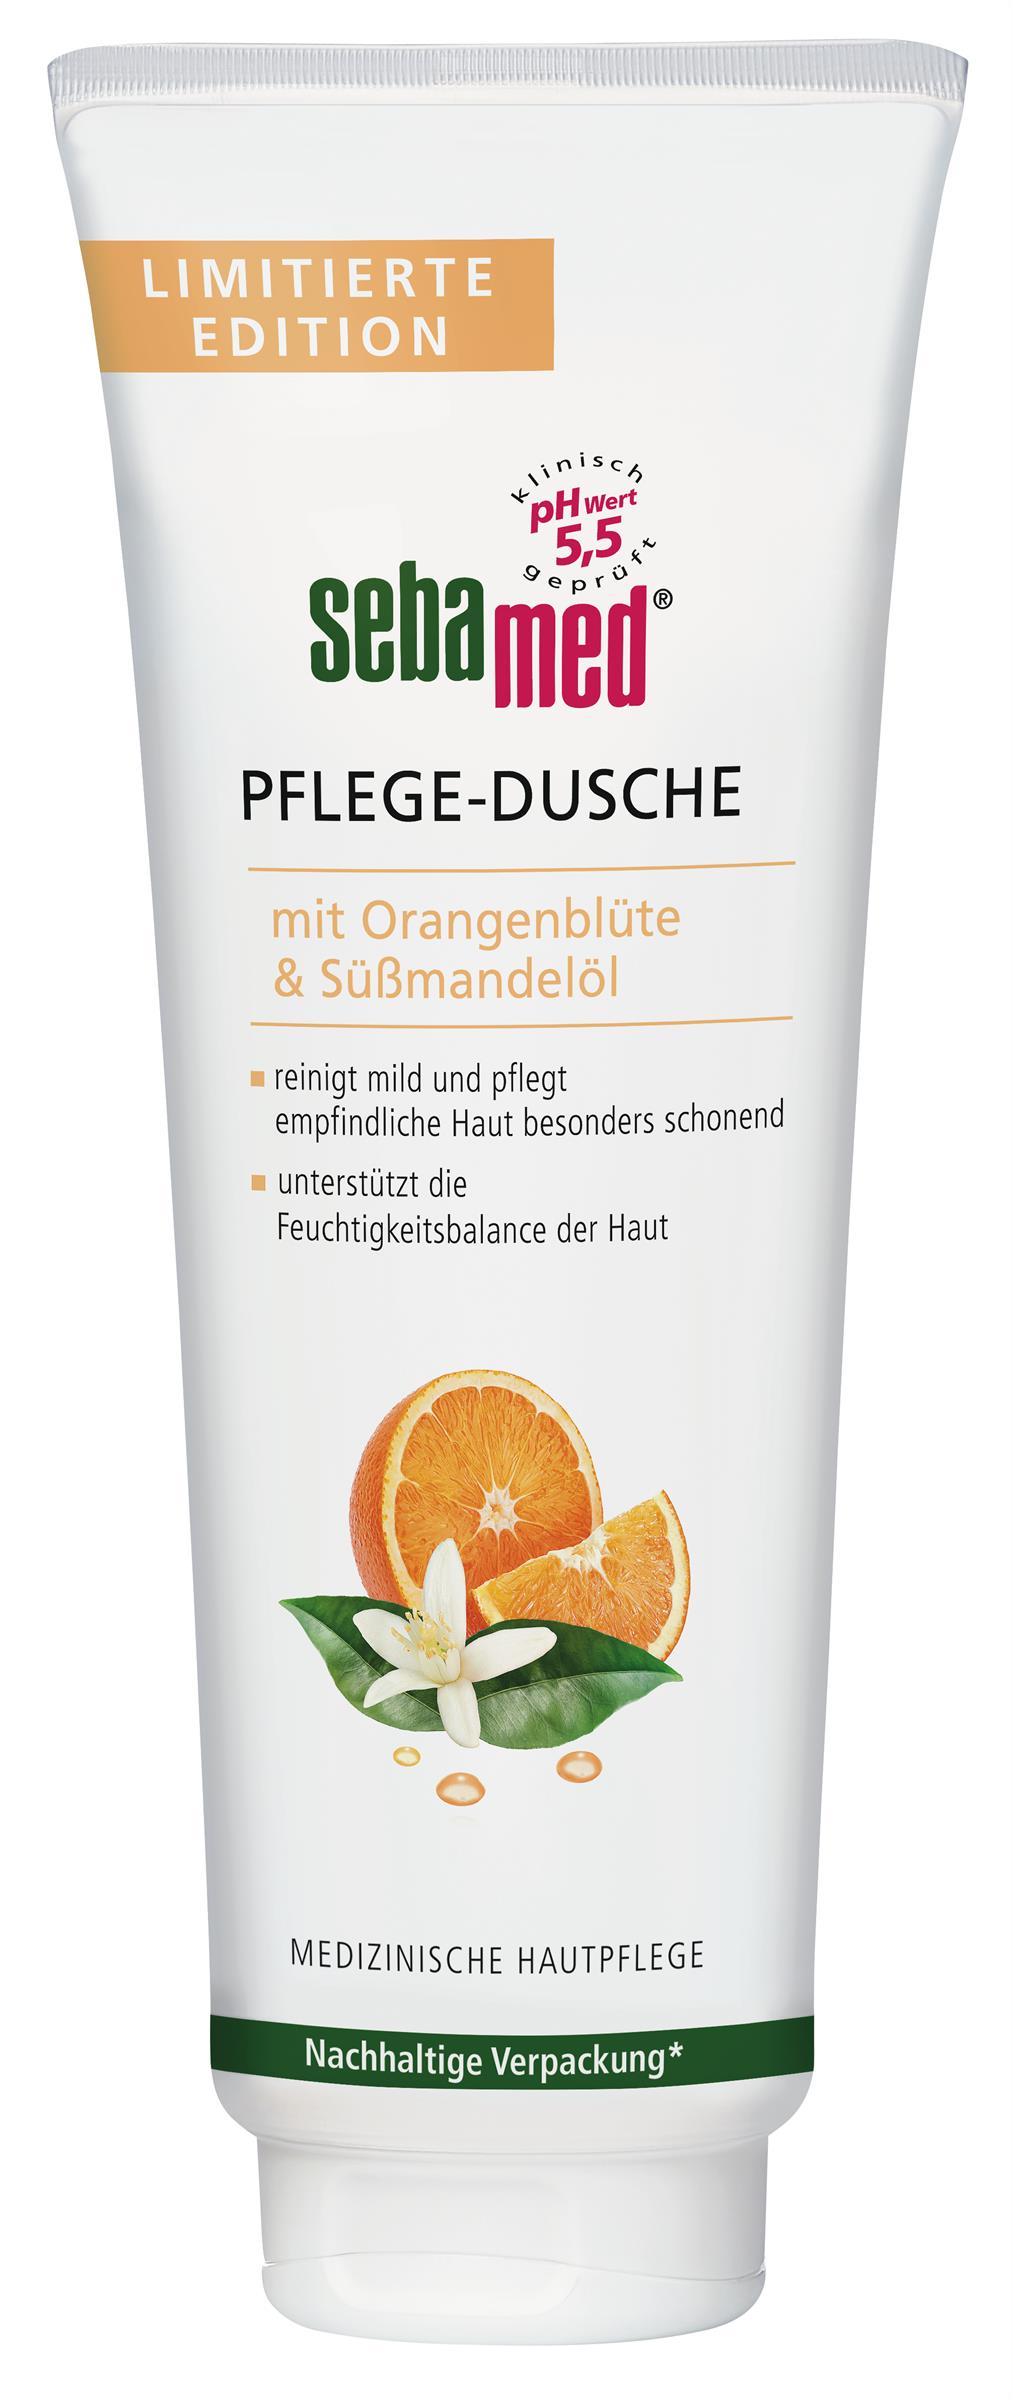 sebamed Pflege-Dusche mit Orangenblüte & Süßmandelöl (250 ml): UVP 3,95 Euro